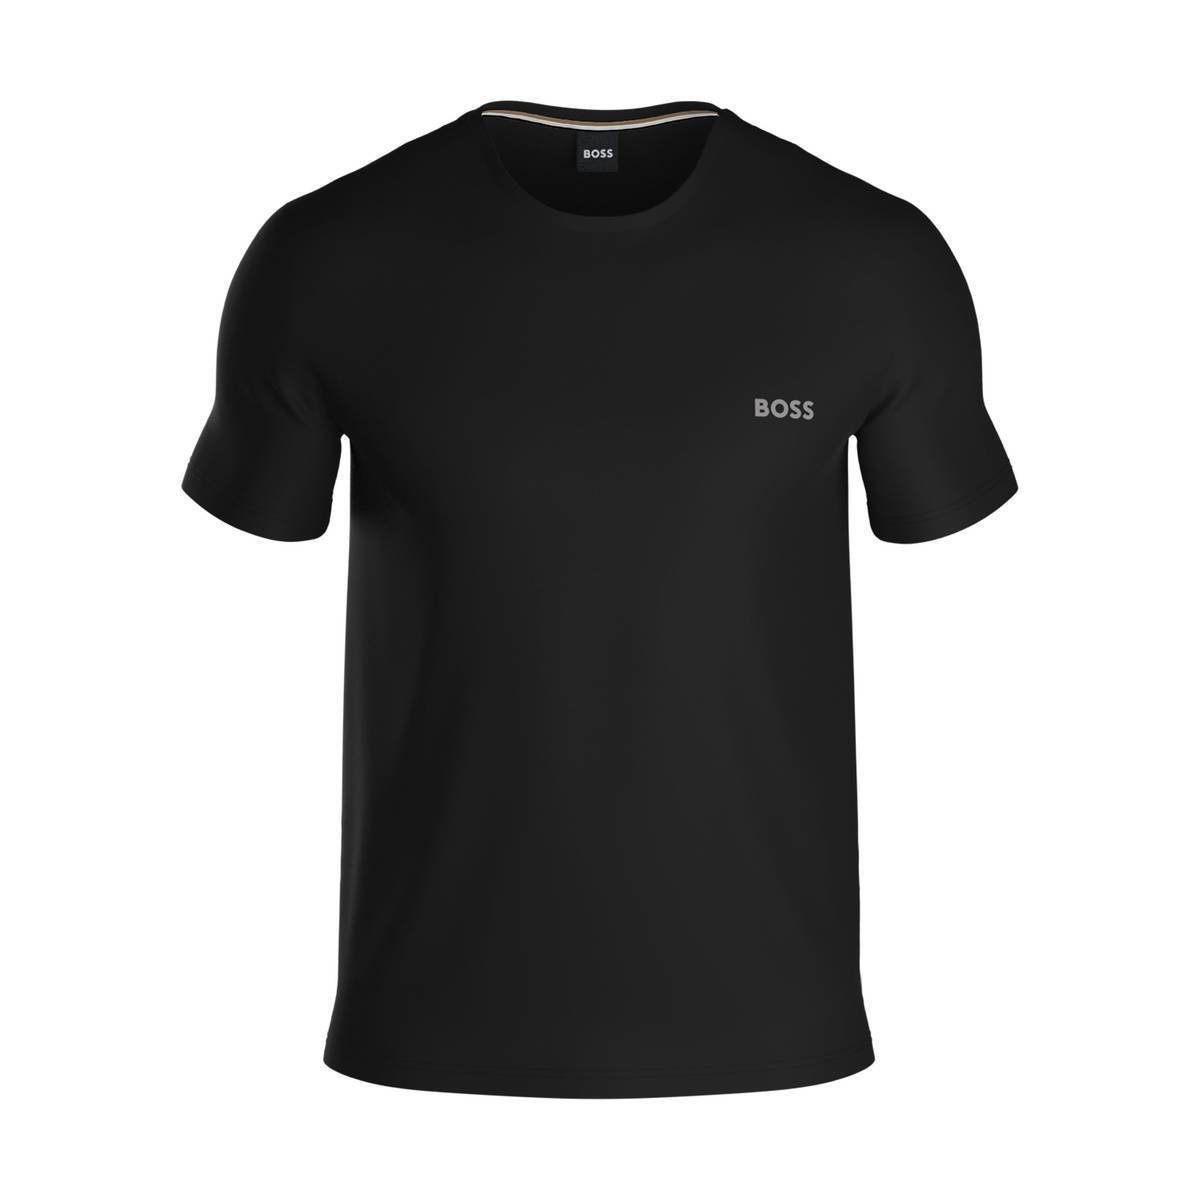 Herren BOSS T-Shirt - Unterziehshirt T-Shirt Mix&Match, Schwarz